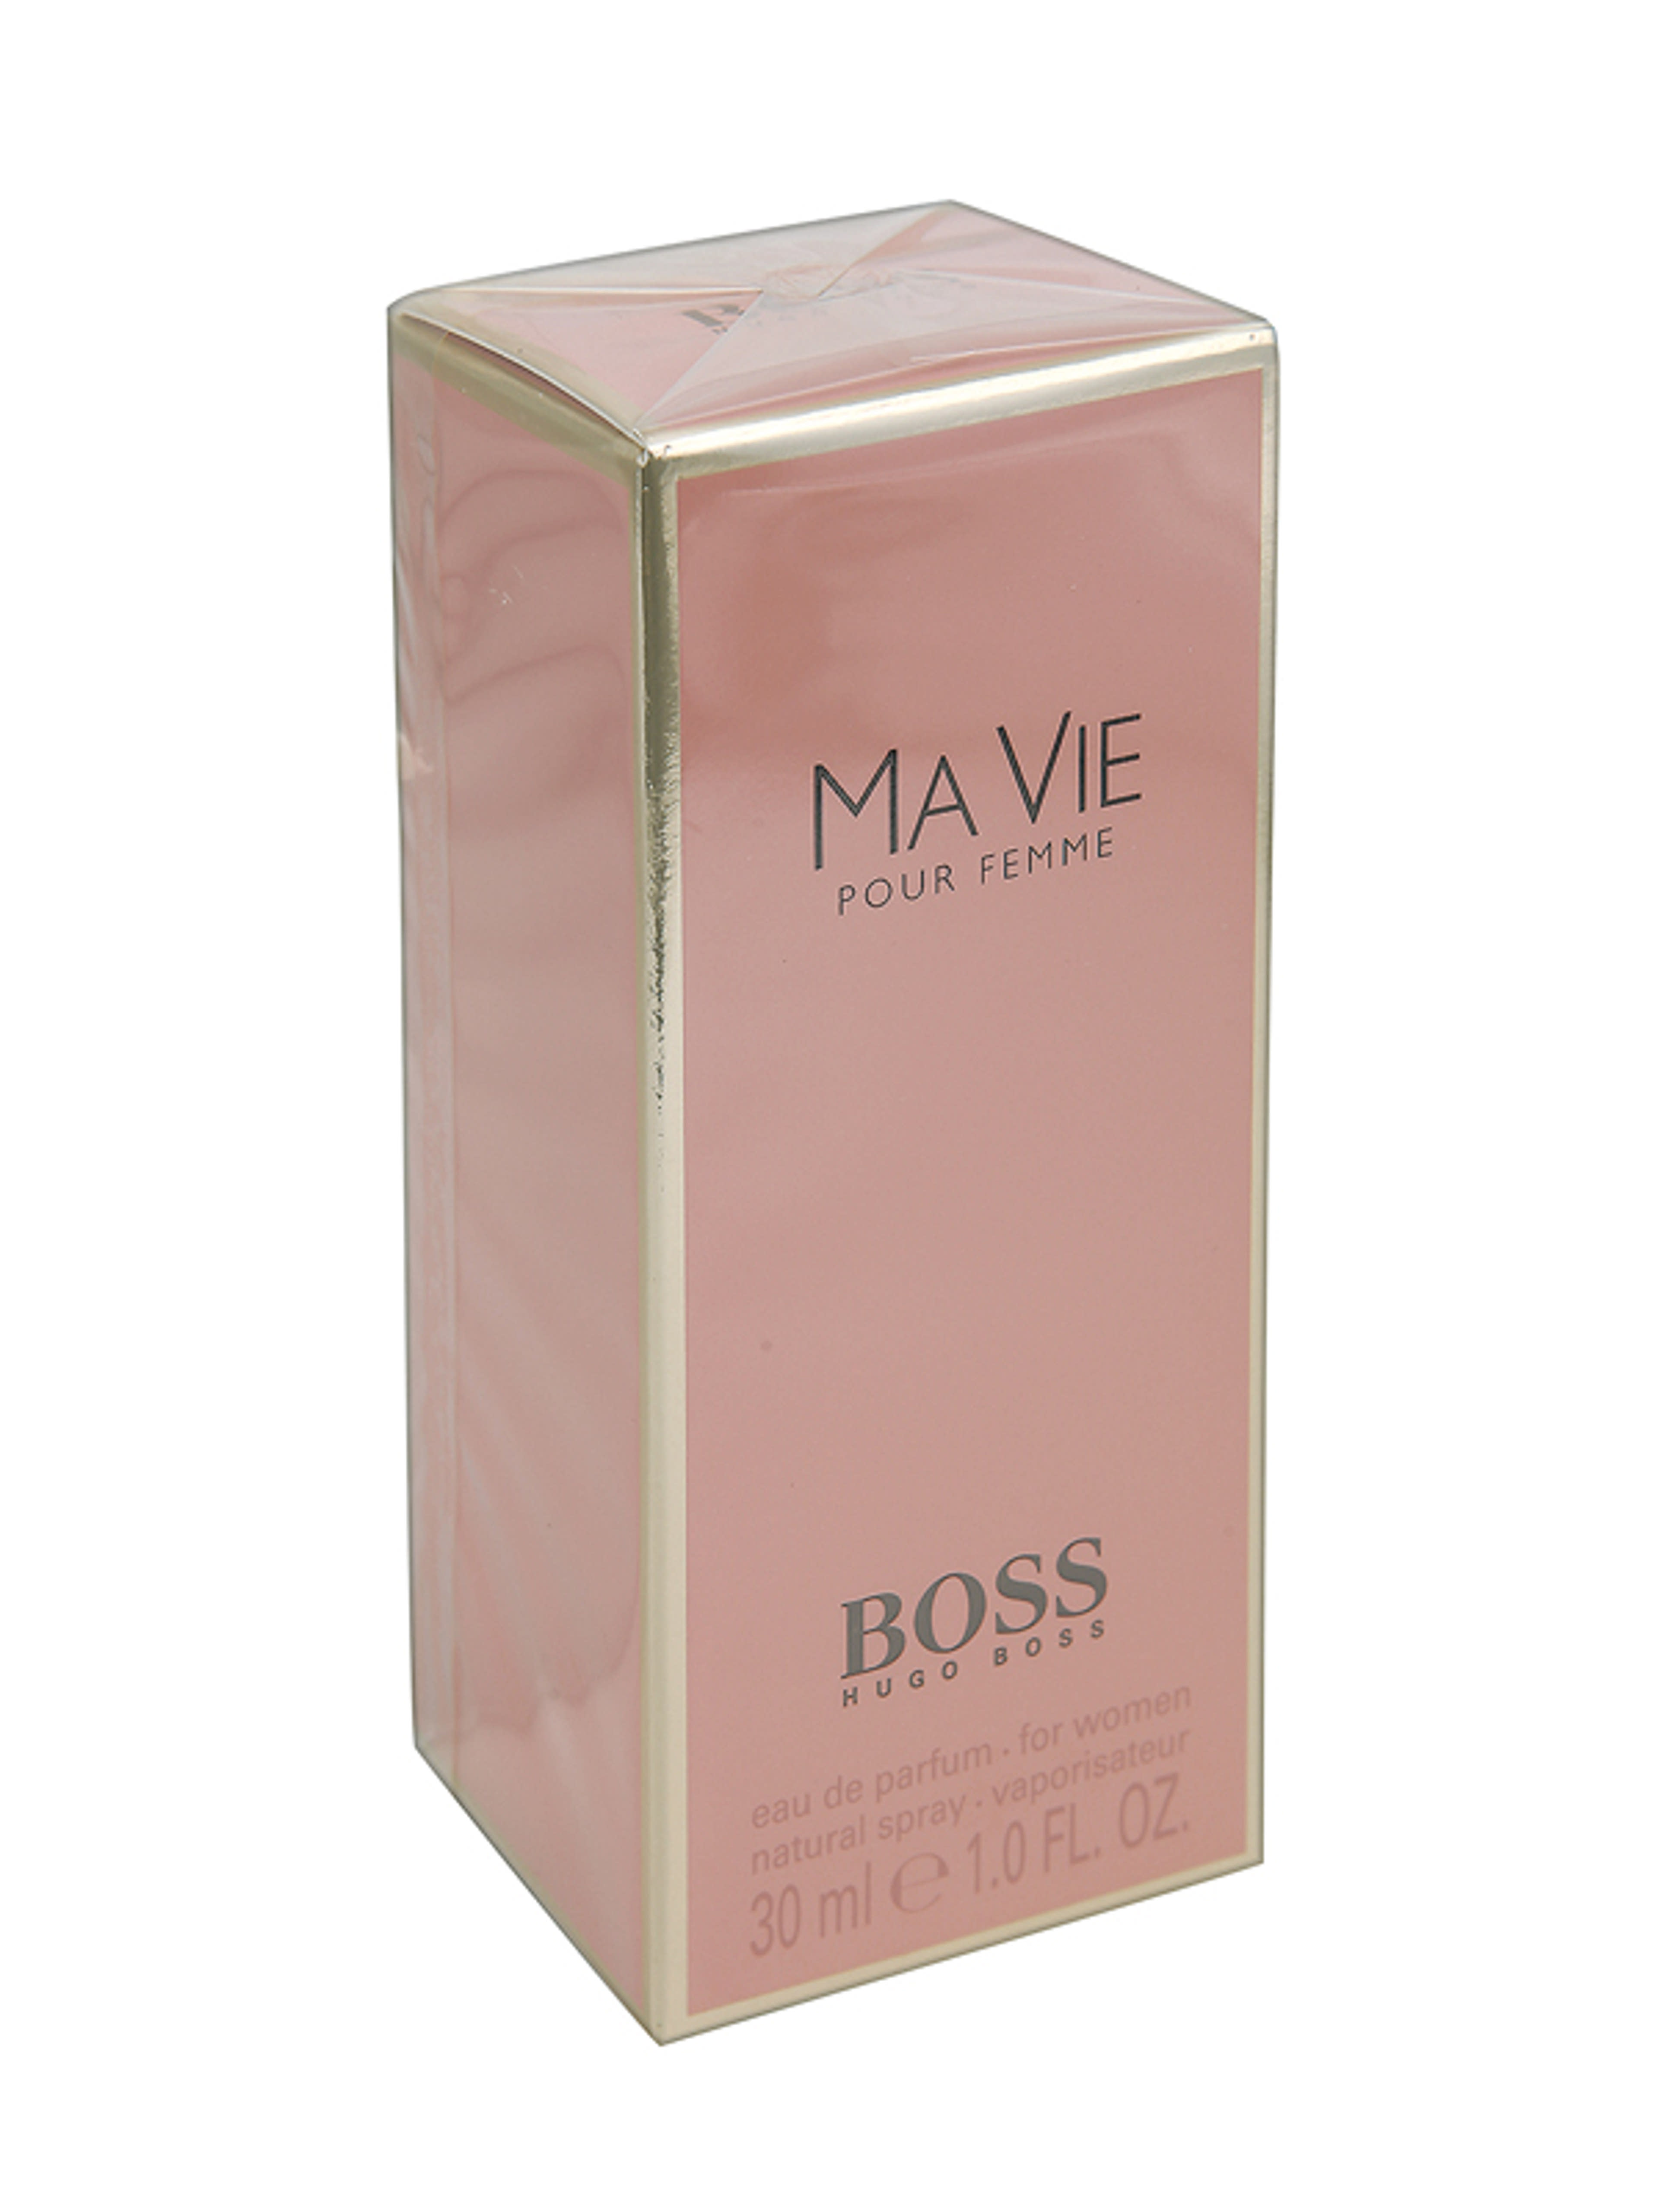 Hugo Boss Ma Via Pour Femme női Eau de Parfum - 30 ml